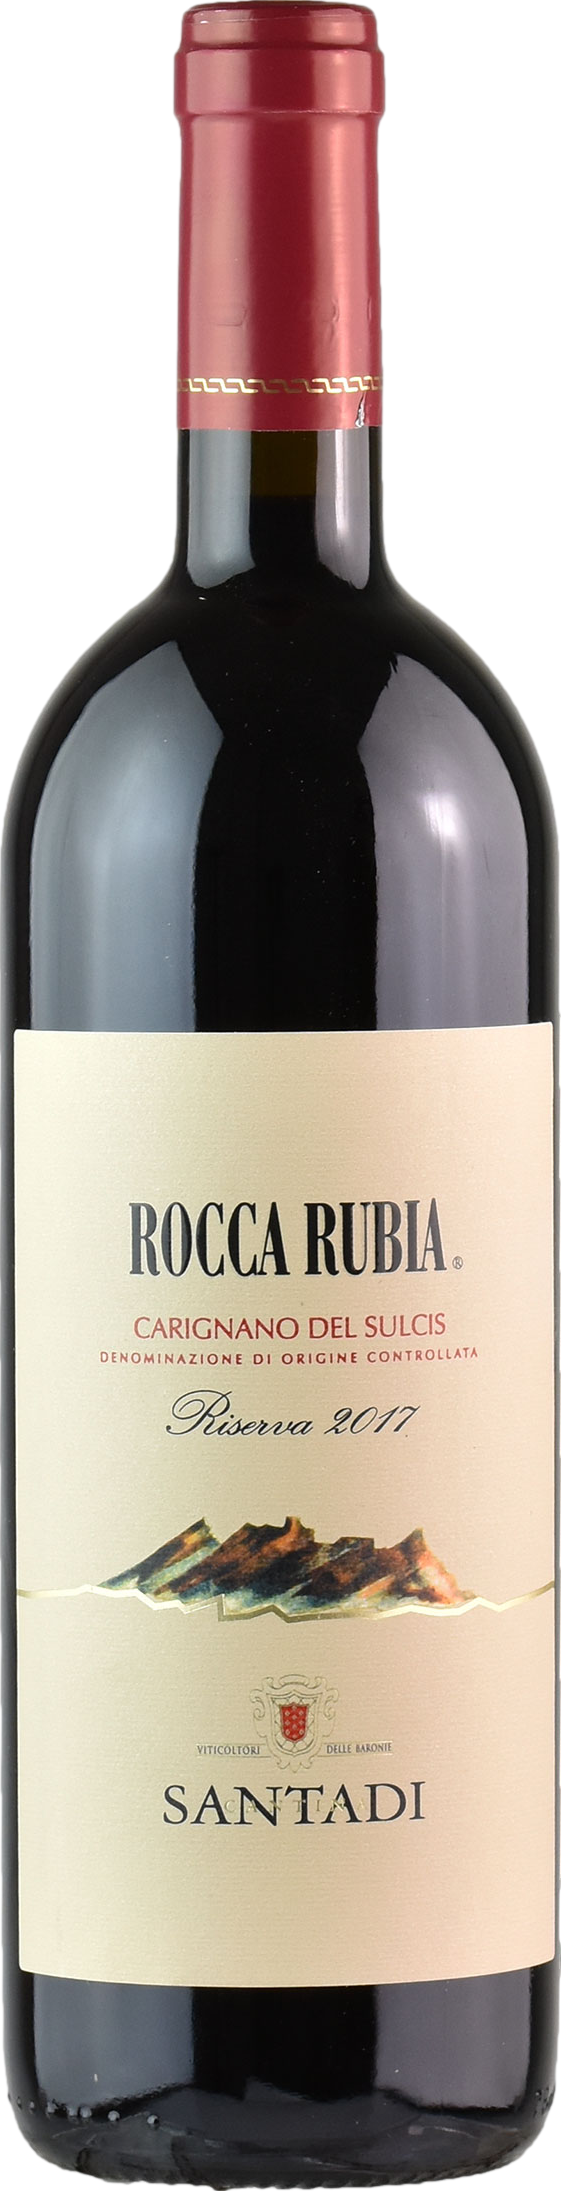 Santadi Carignano del Sulcis Rocca Rubia Riserva 2018